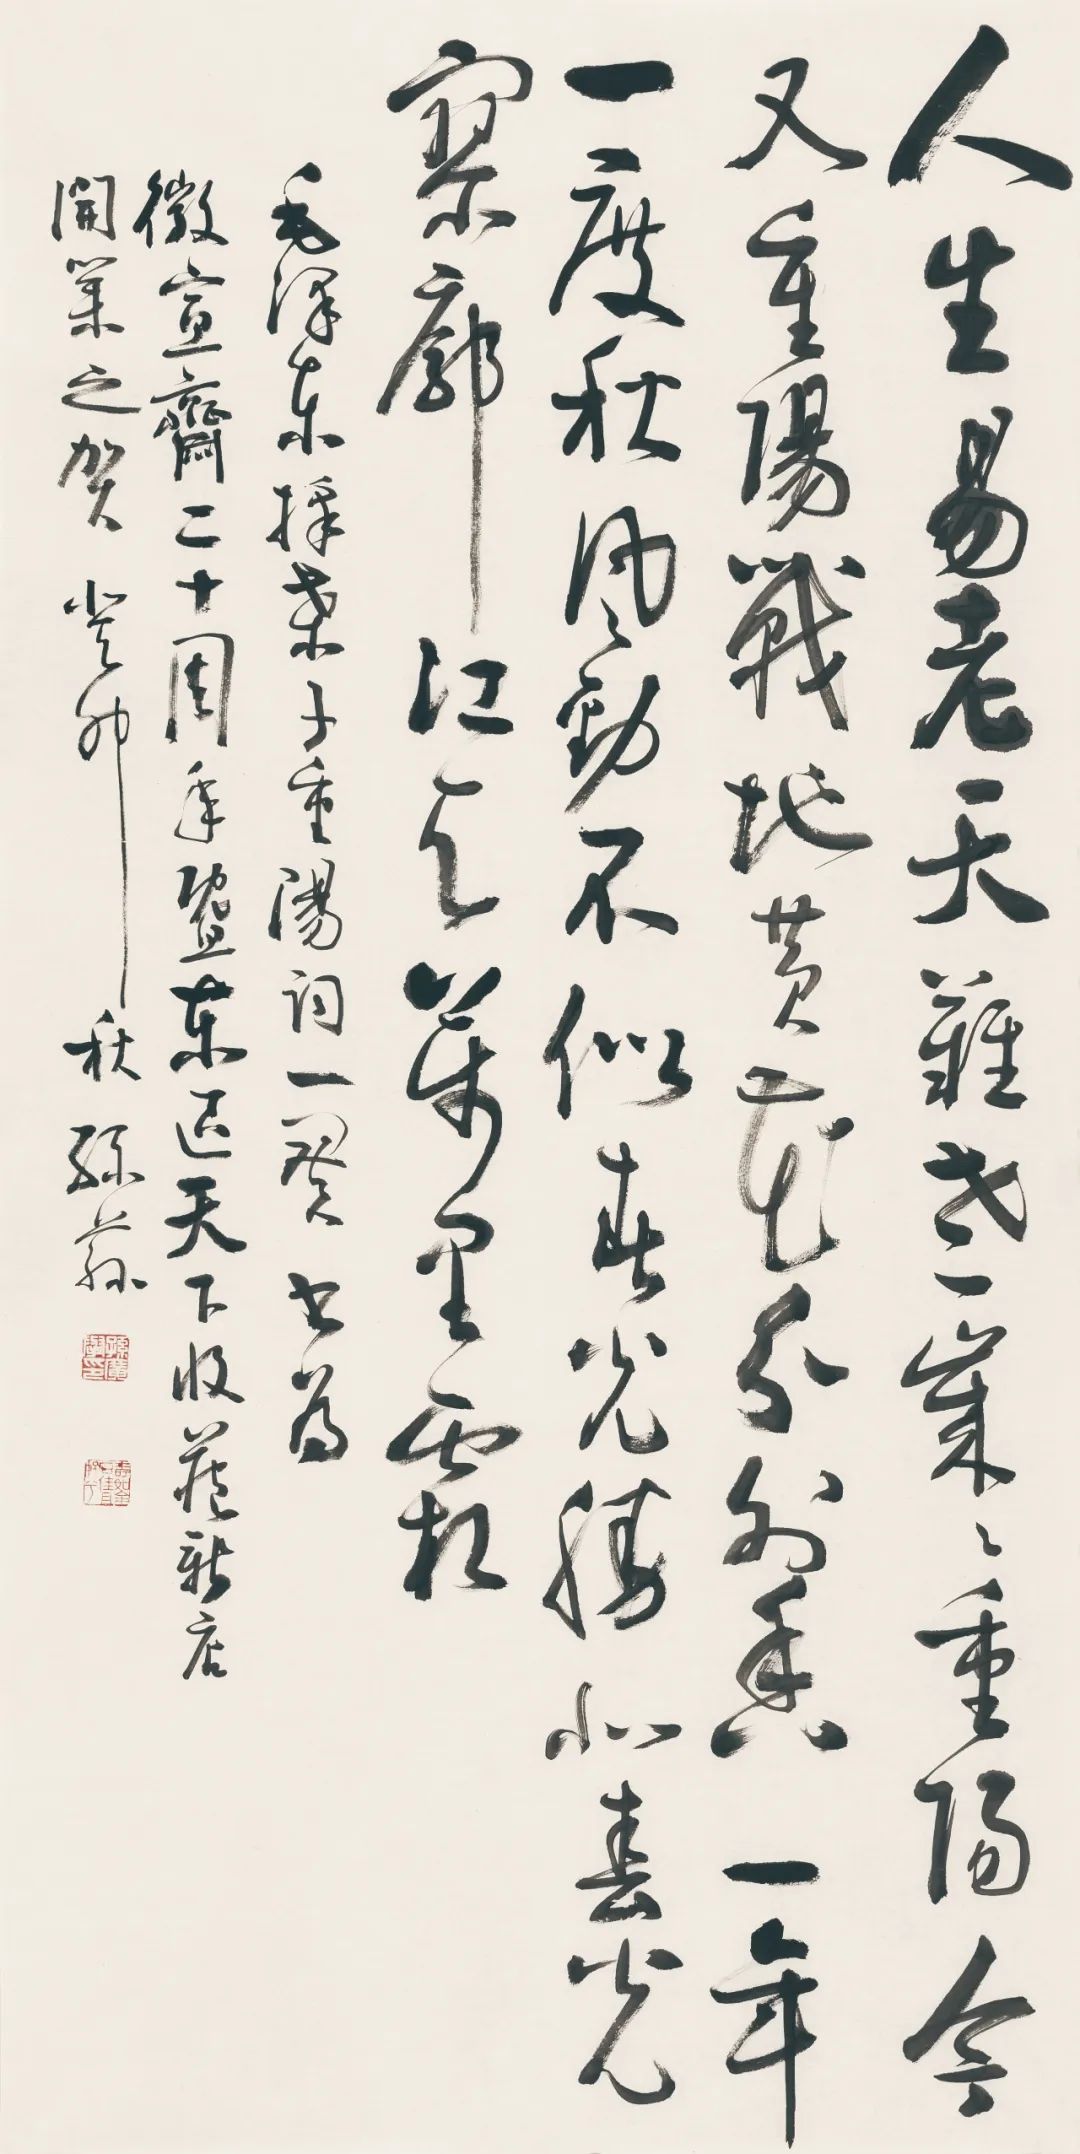 藏·展览丨纸笺传情，笔墨放歌——河南书法名家邀请展 12月24日开幕(图5)